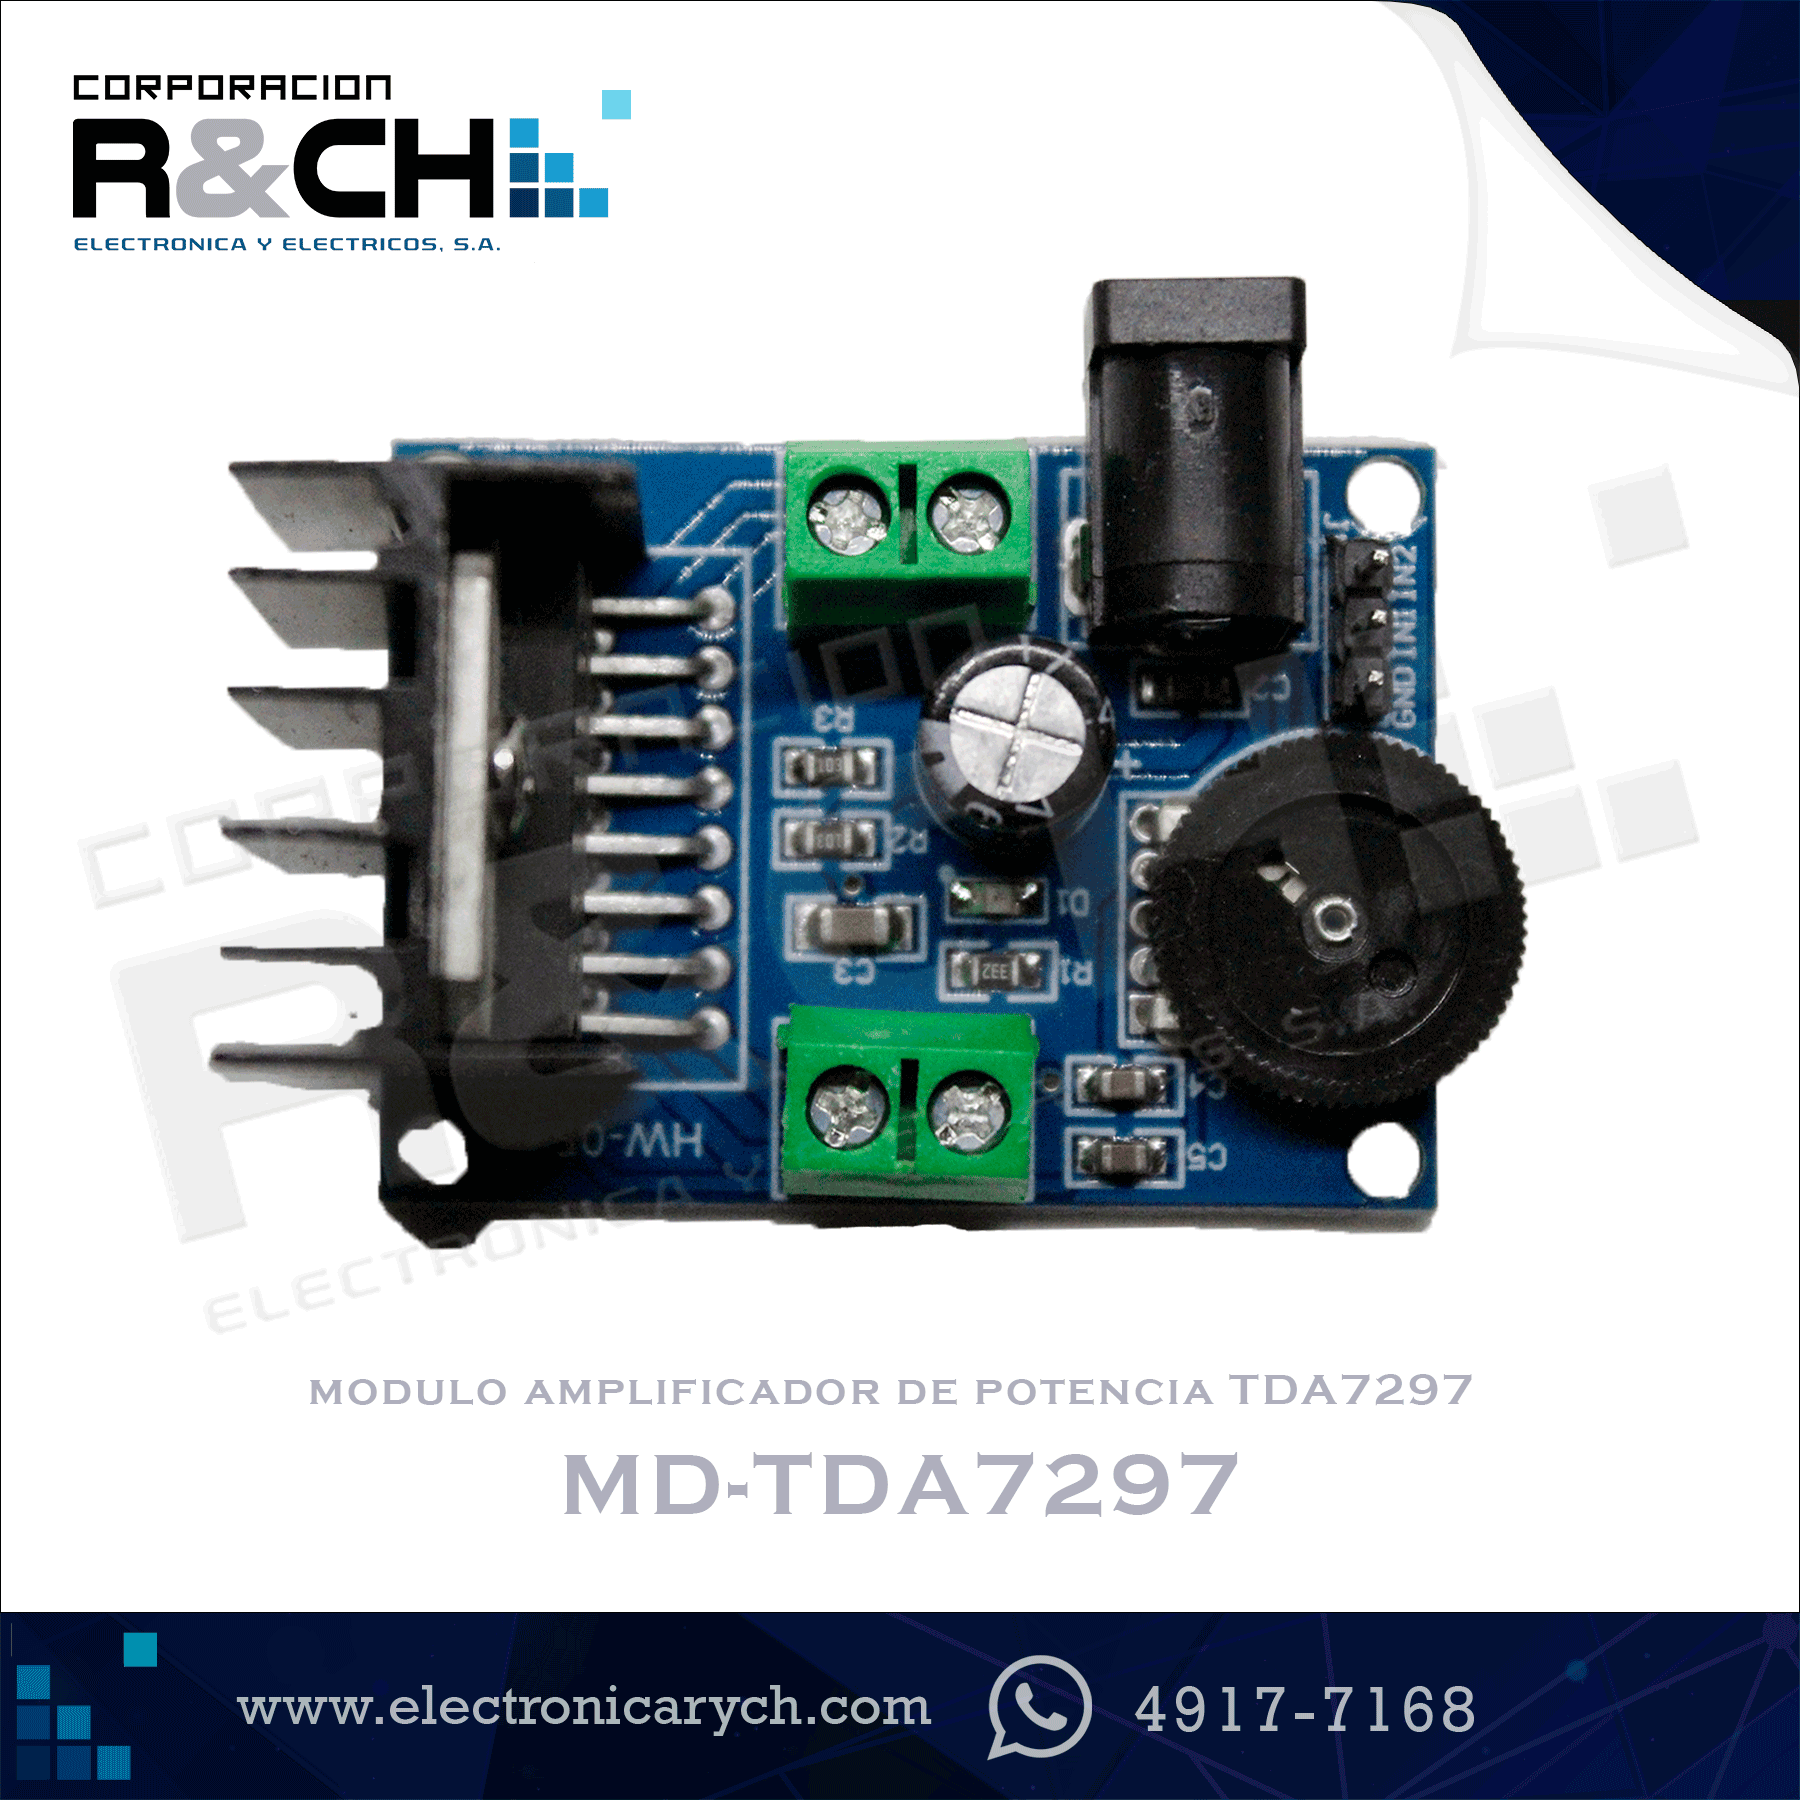 MD-TDA7297 modulo amplificador de potencia TDA7297